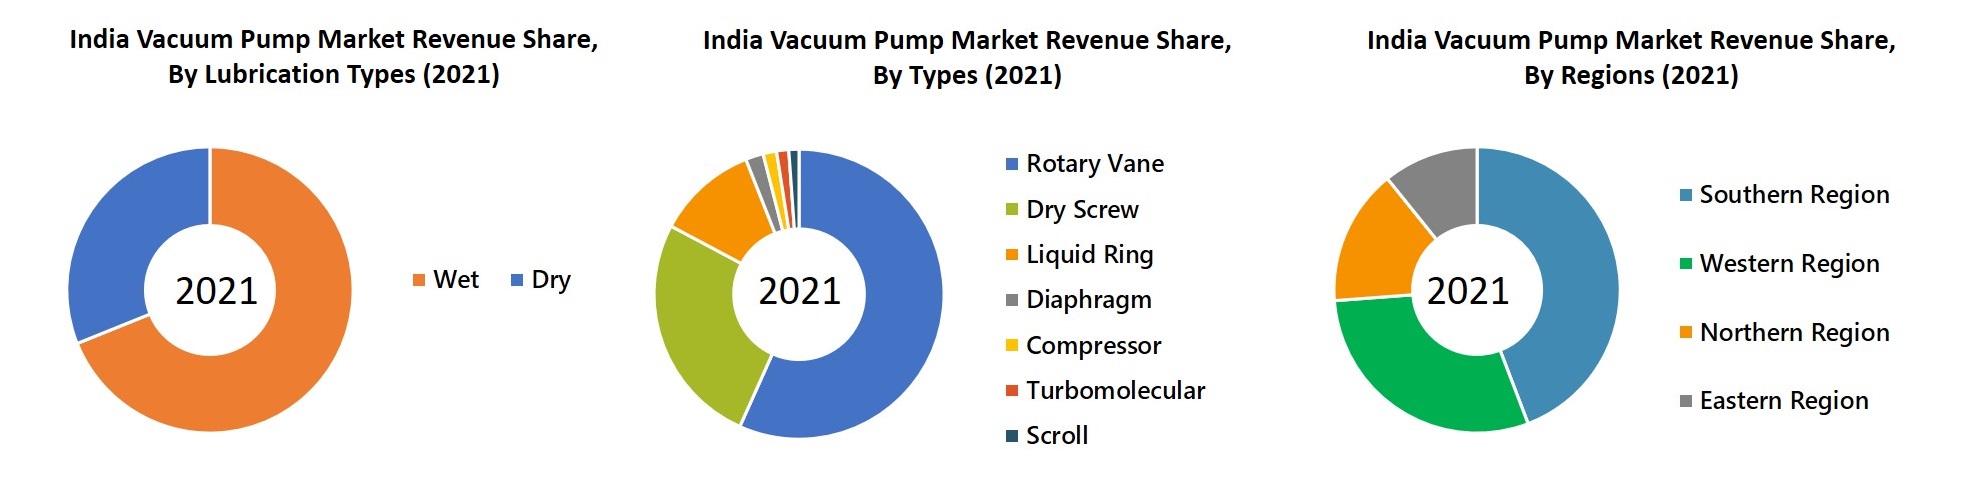 India Vacuum Pump Market Revenue Share